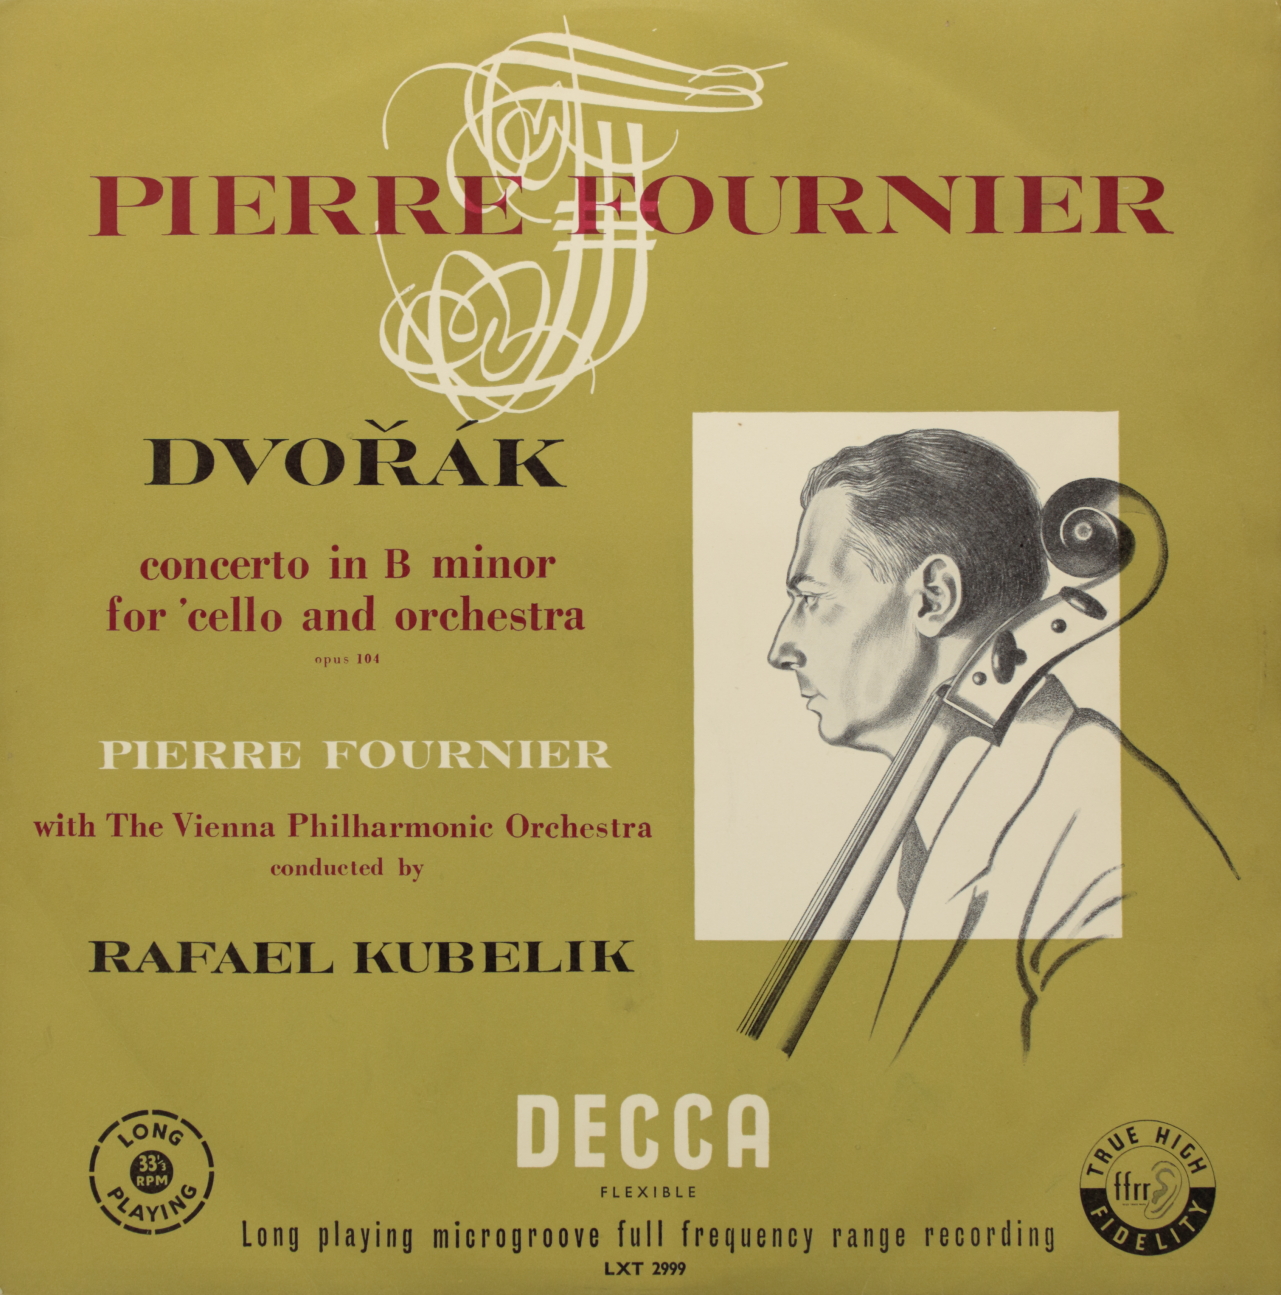 Dvorak: Concerto in B minor for Cello and Orchestra Opus 104